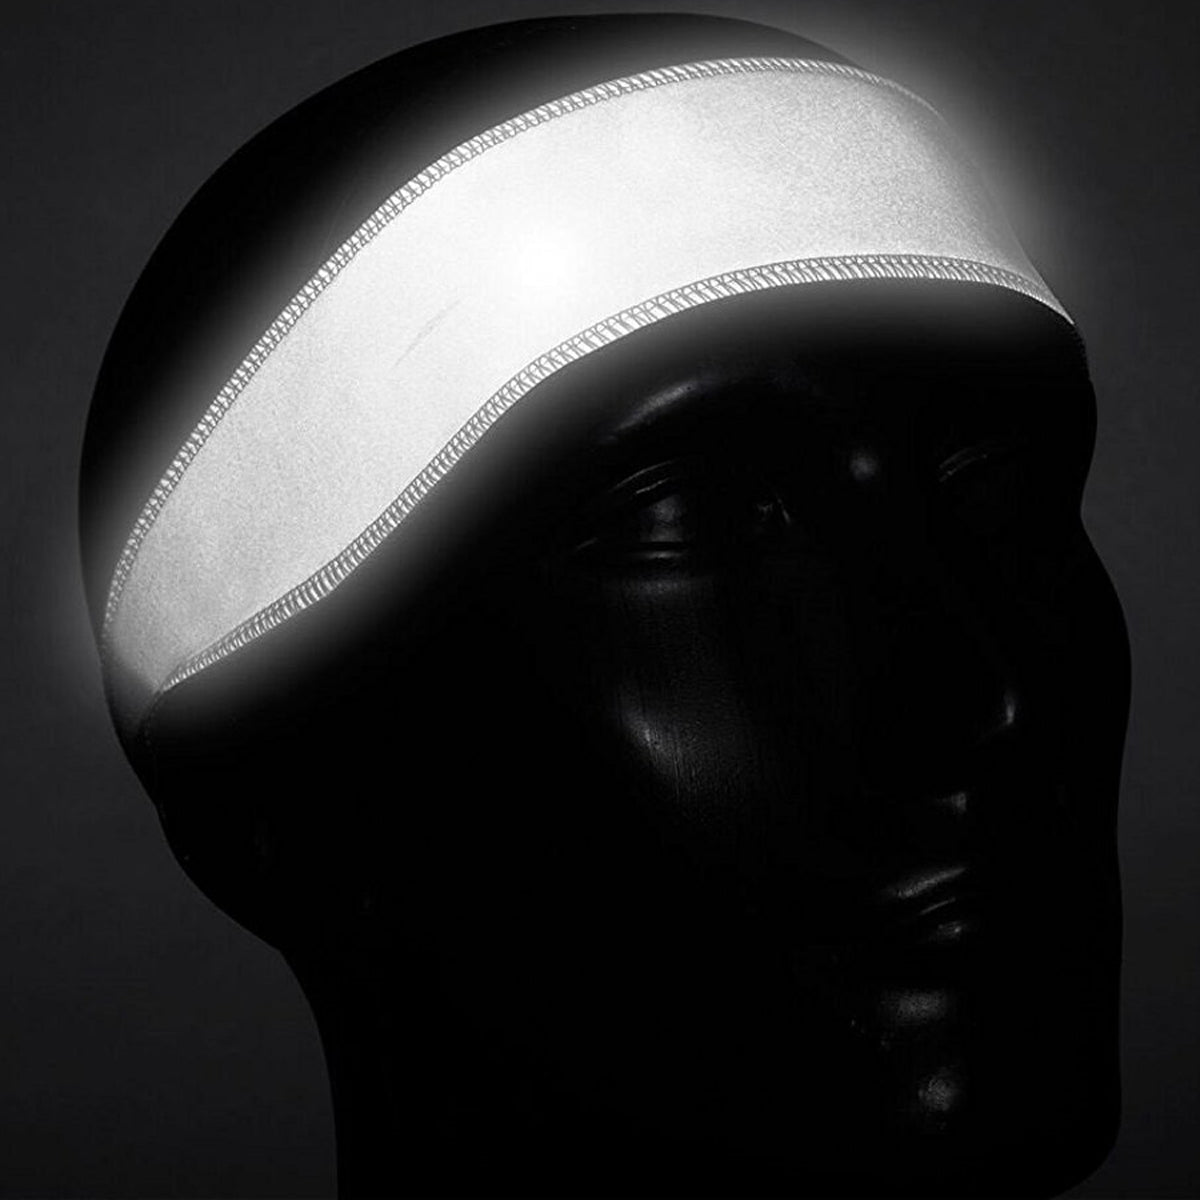 Halo Headband Illuminator V Adjustable Headband - Reflective Silver Halo